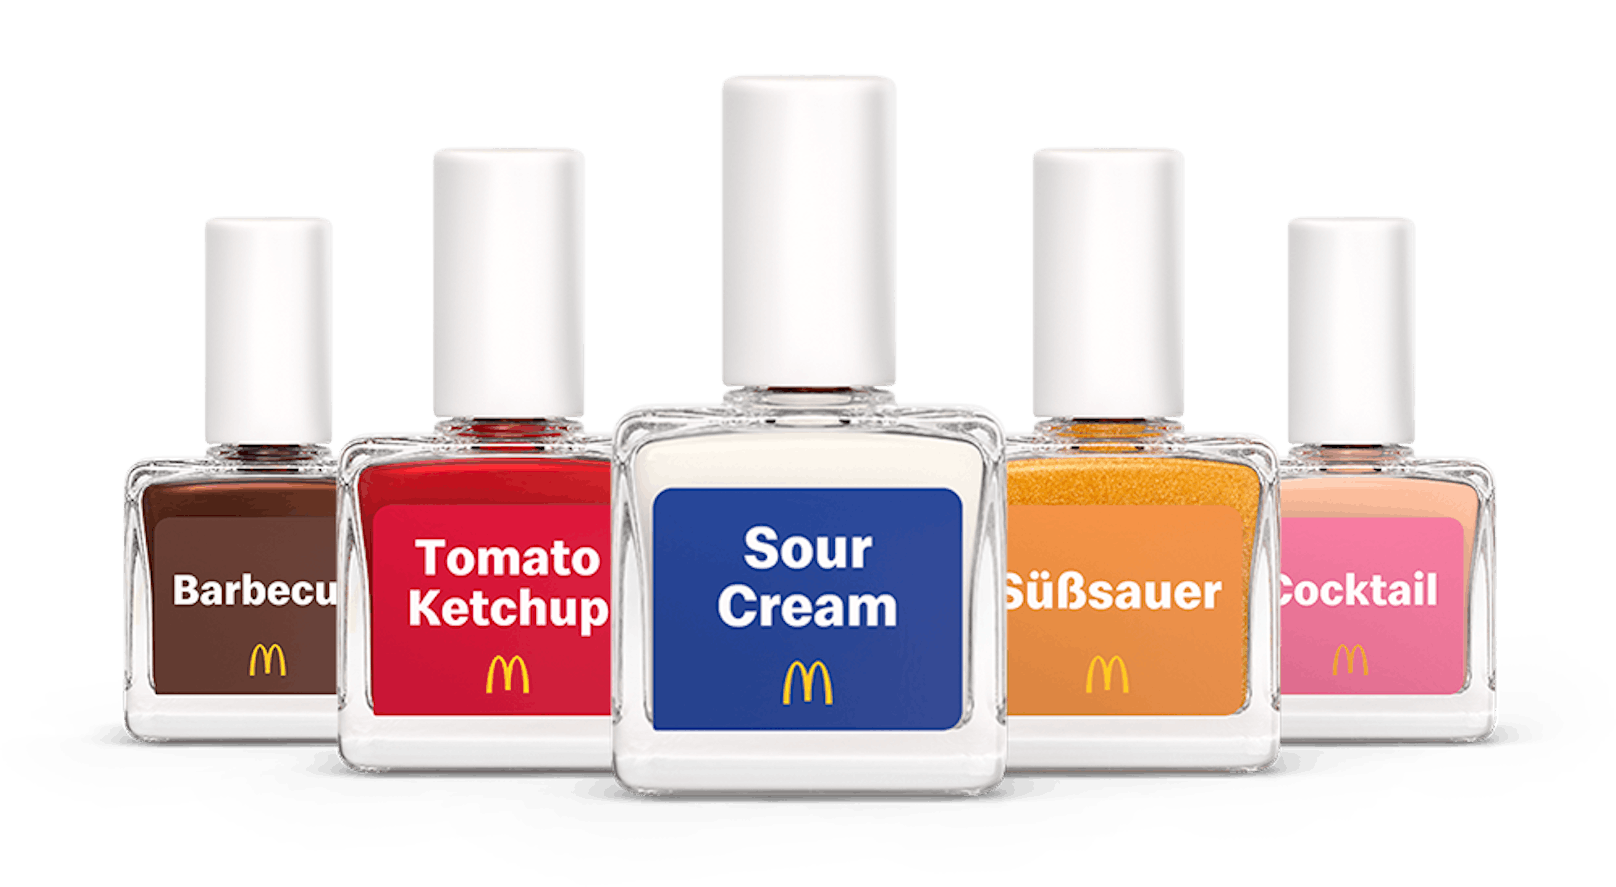 Erhältlich sind die fünf streng limitierten Nagellacke ab 29. August in allen McDonald's Filialen in Österreich. Die Farben im Detail: